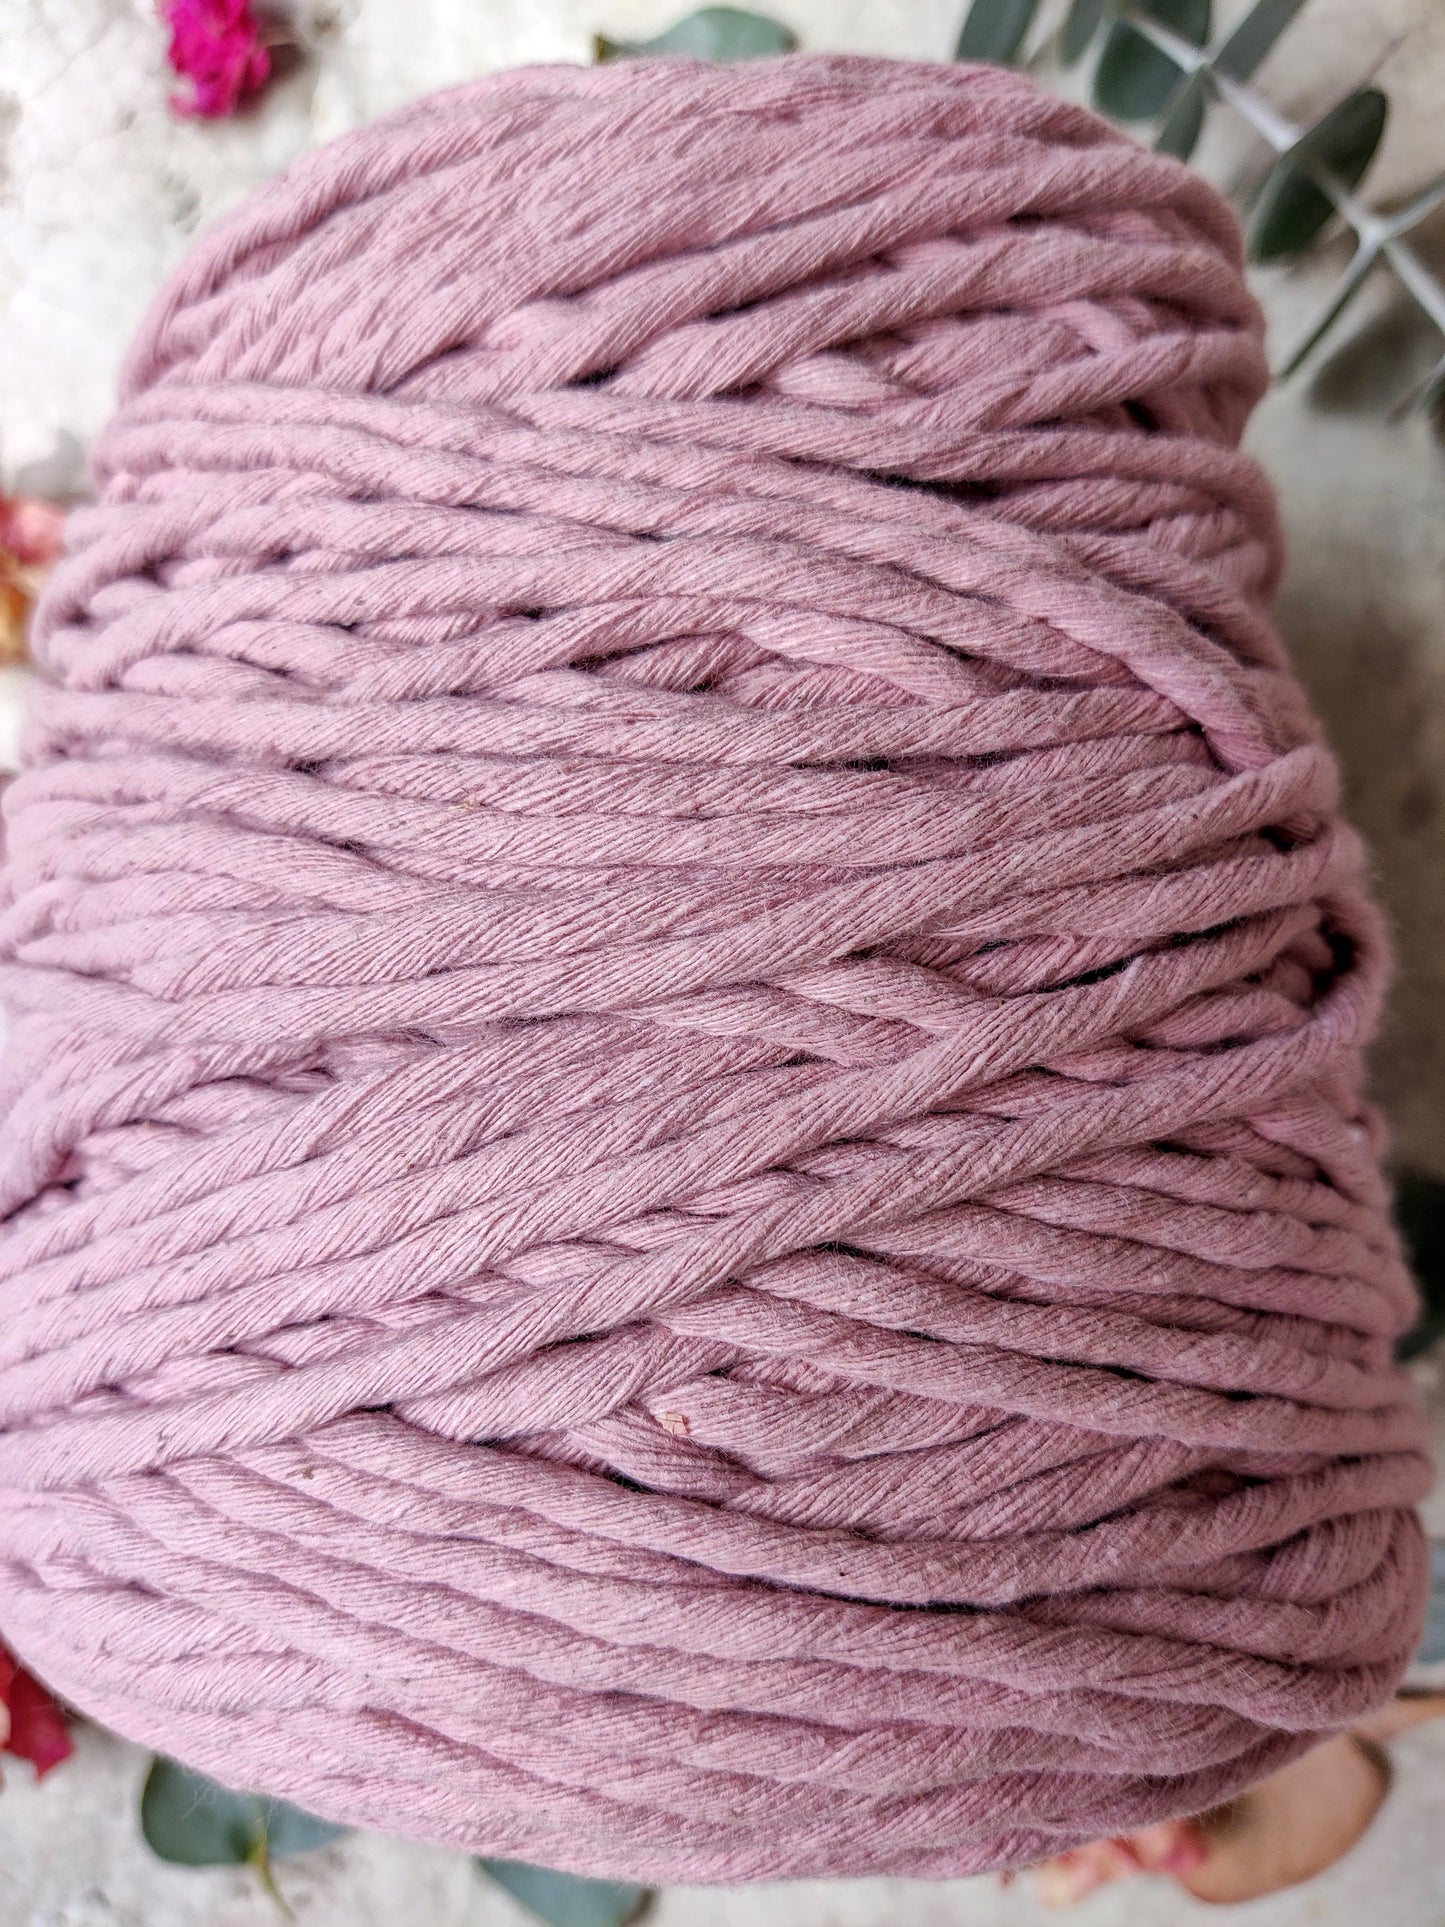 Hilaza PREMIUM palo de rosa 100% algodón 1kg